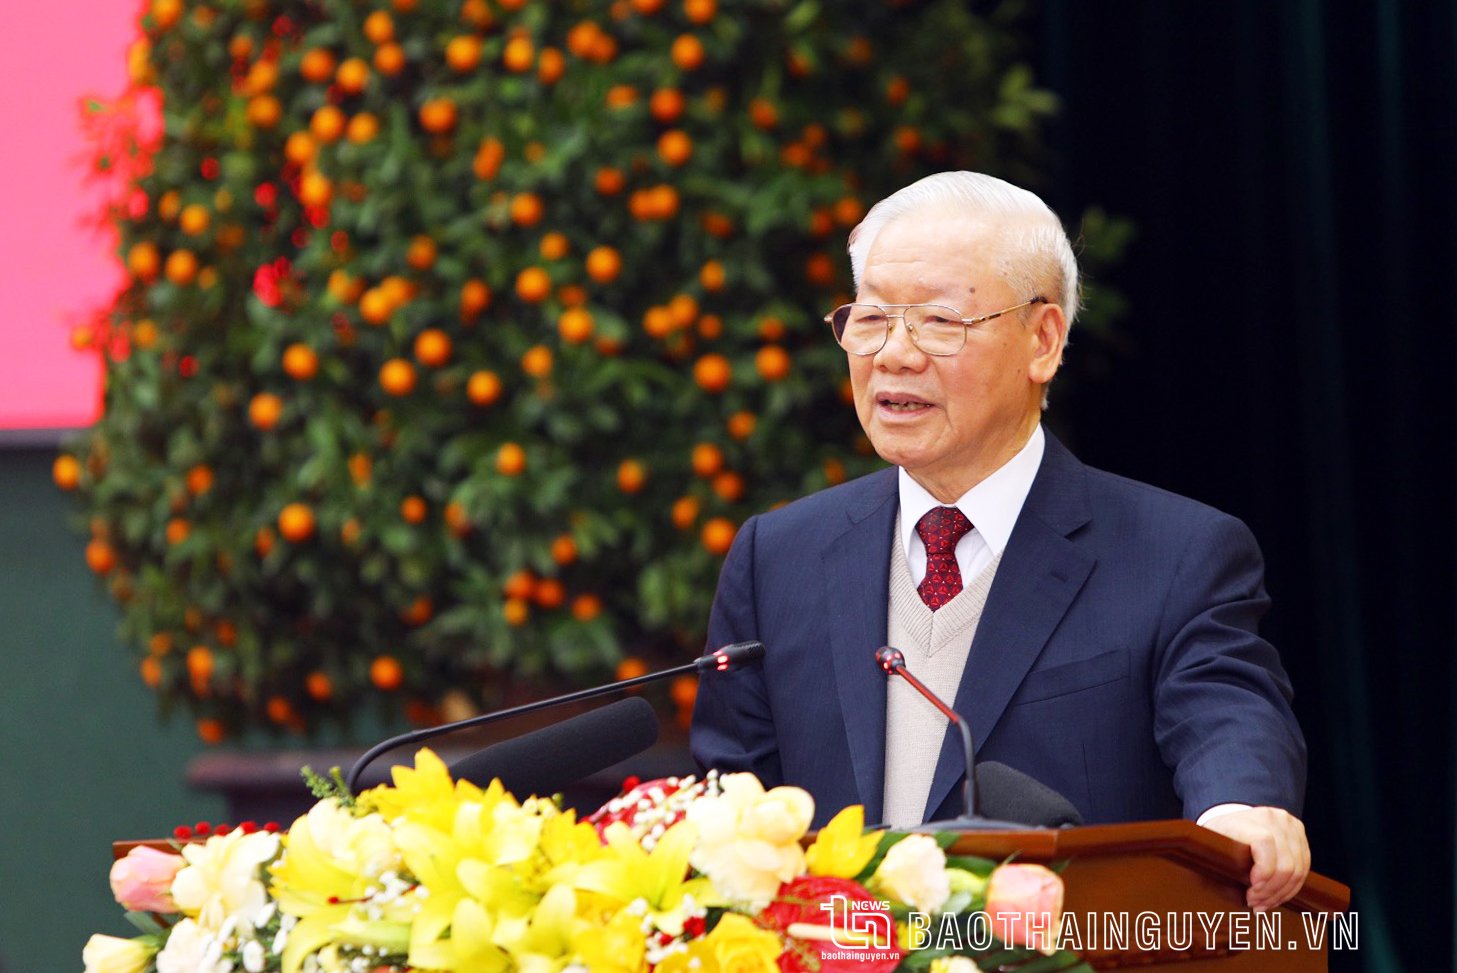 Tổng Bí thư Nguyễn Phú Trọng phát biểu chỉ đạo tại buổi làm việc với tập thể lãnh đạo tỉnh Thái Nguyên.